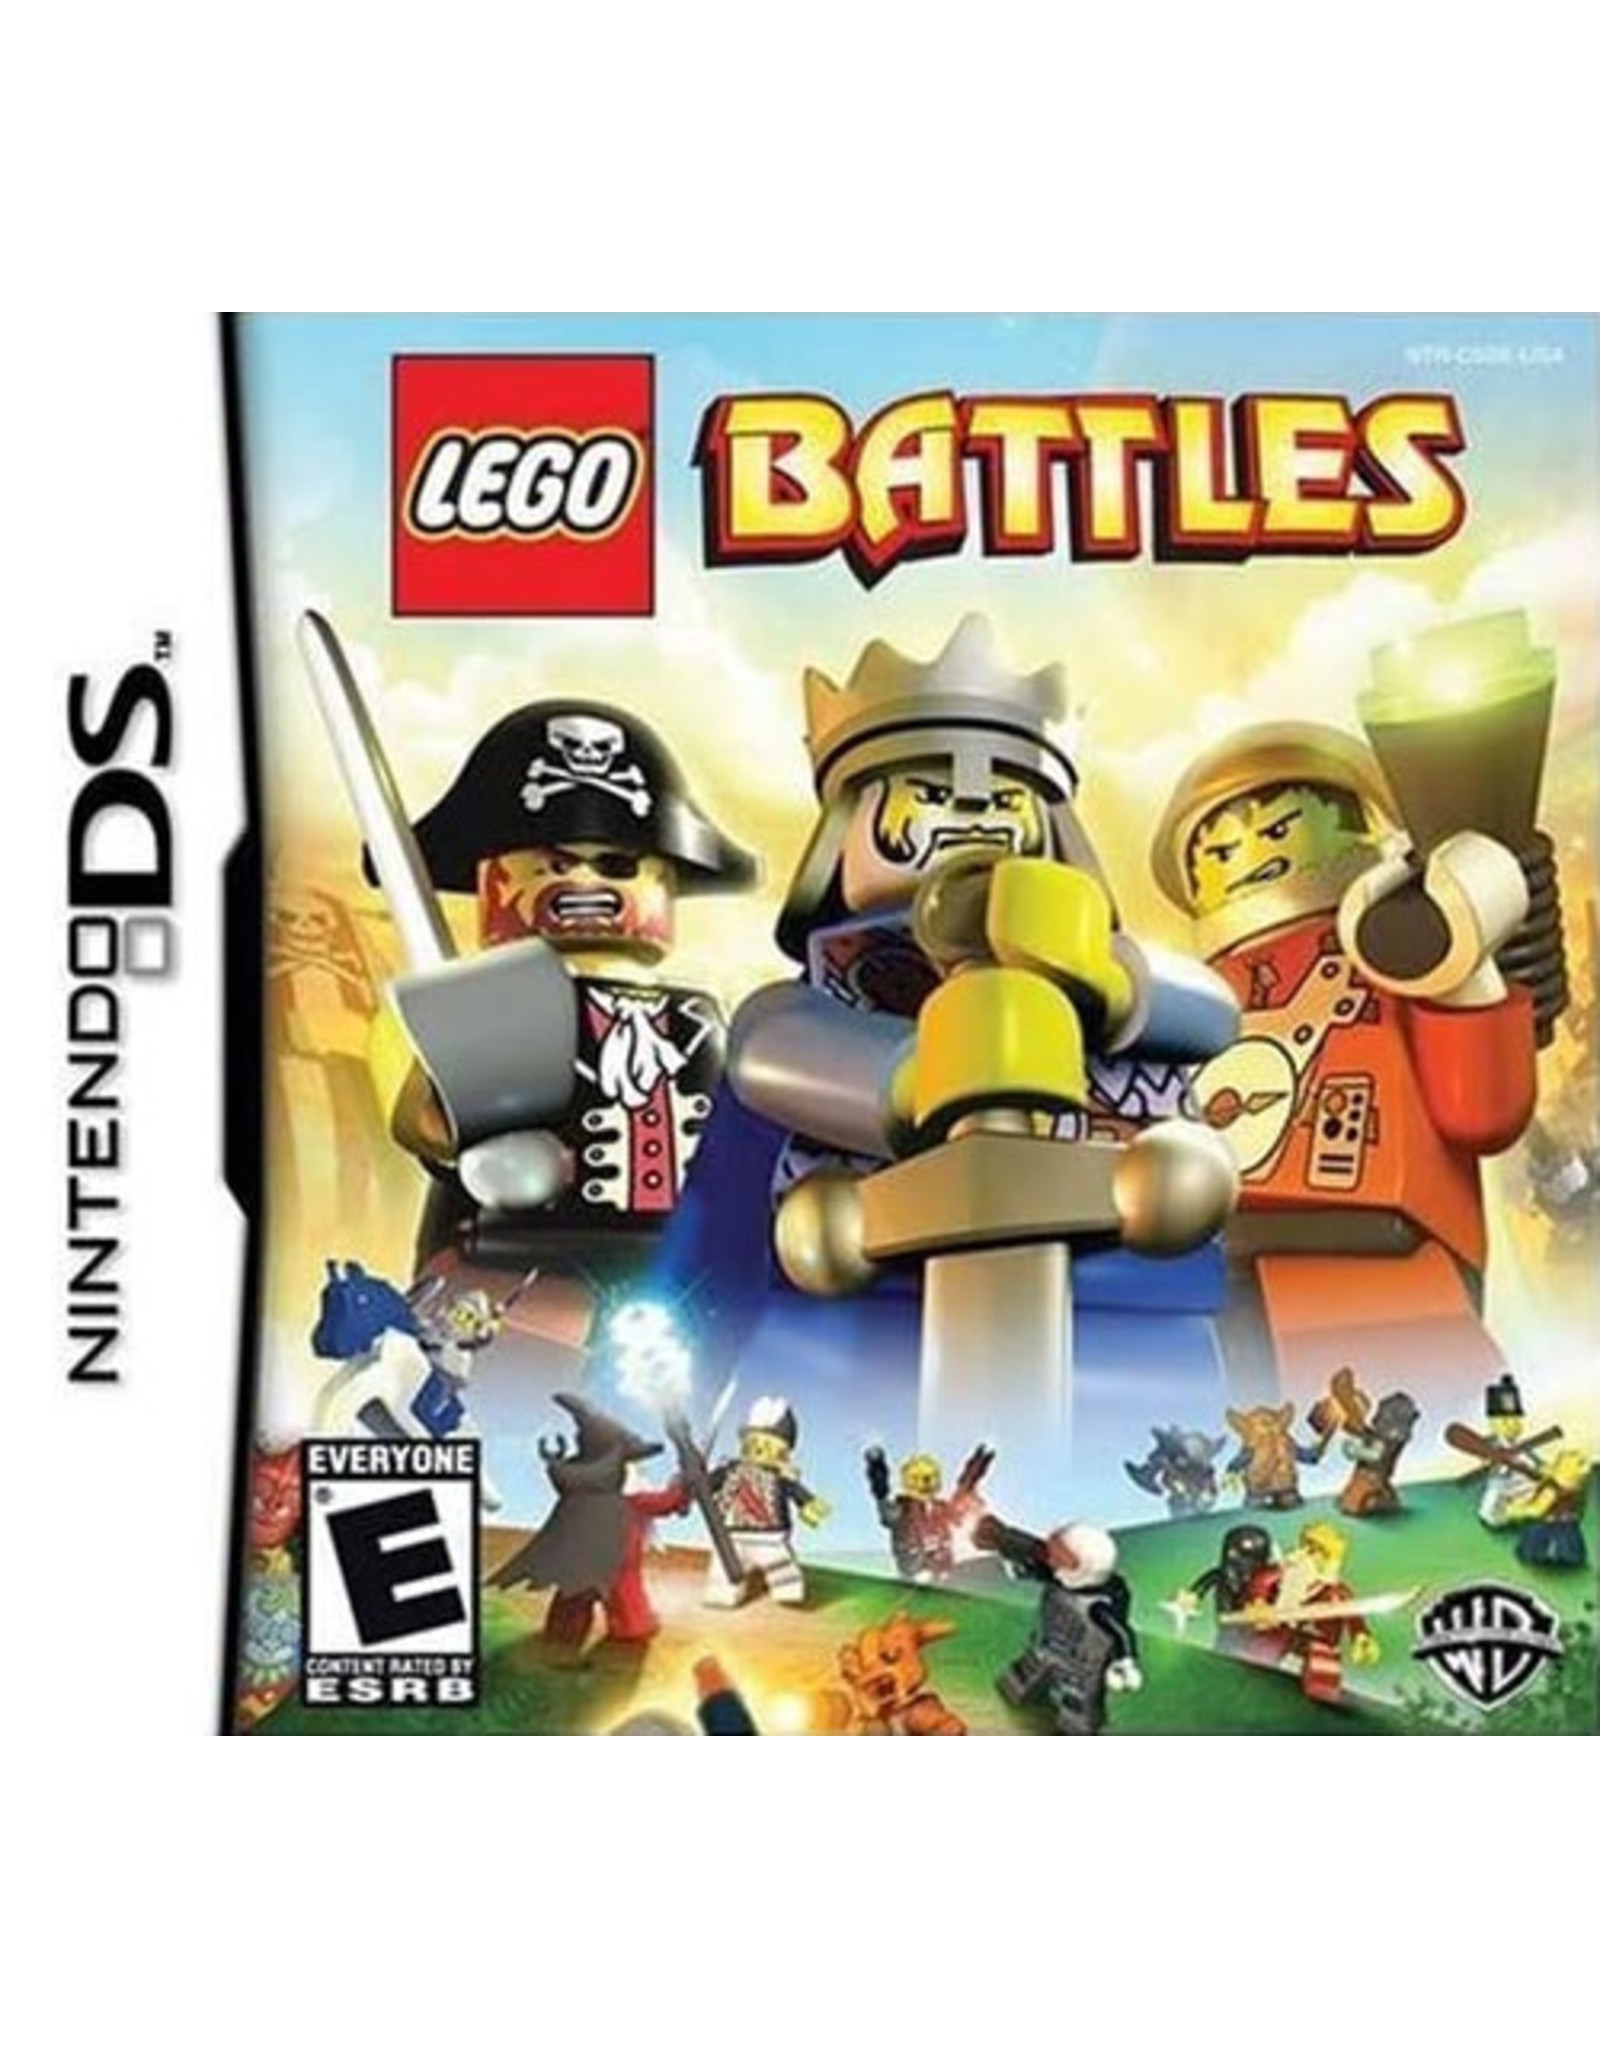 Nintendo DS LEGO Battles (Cart Only)